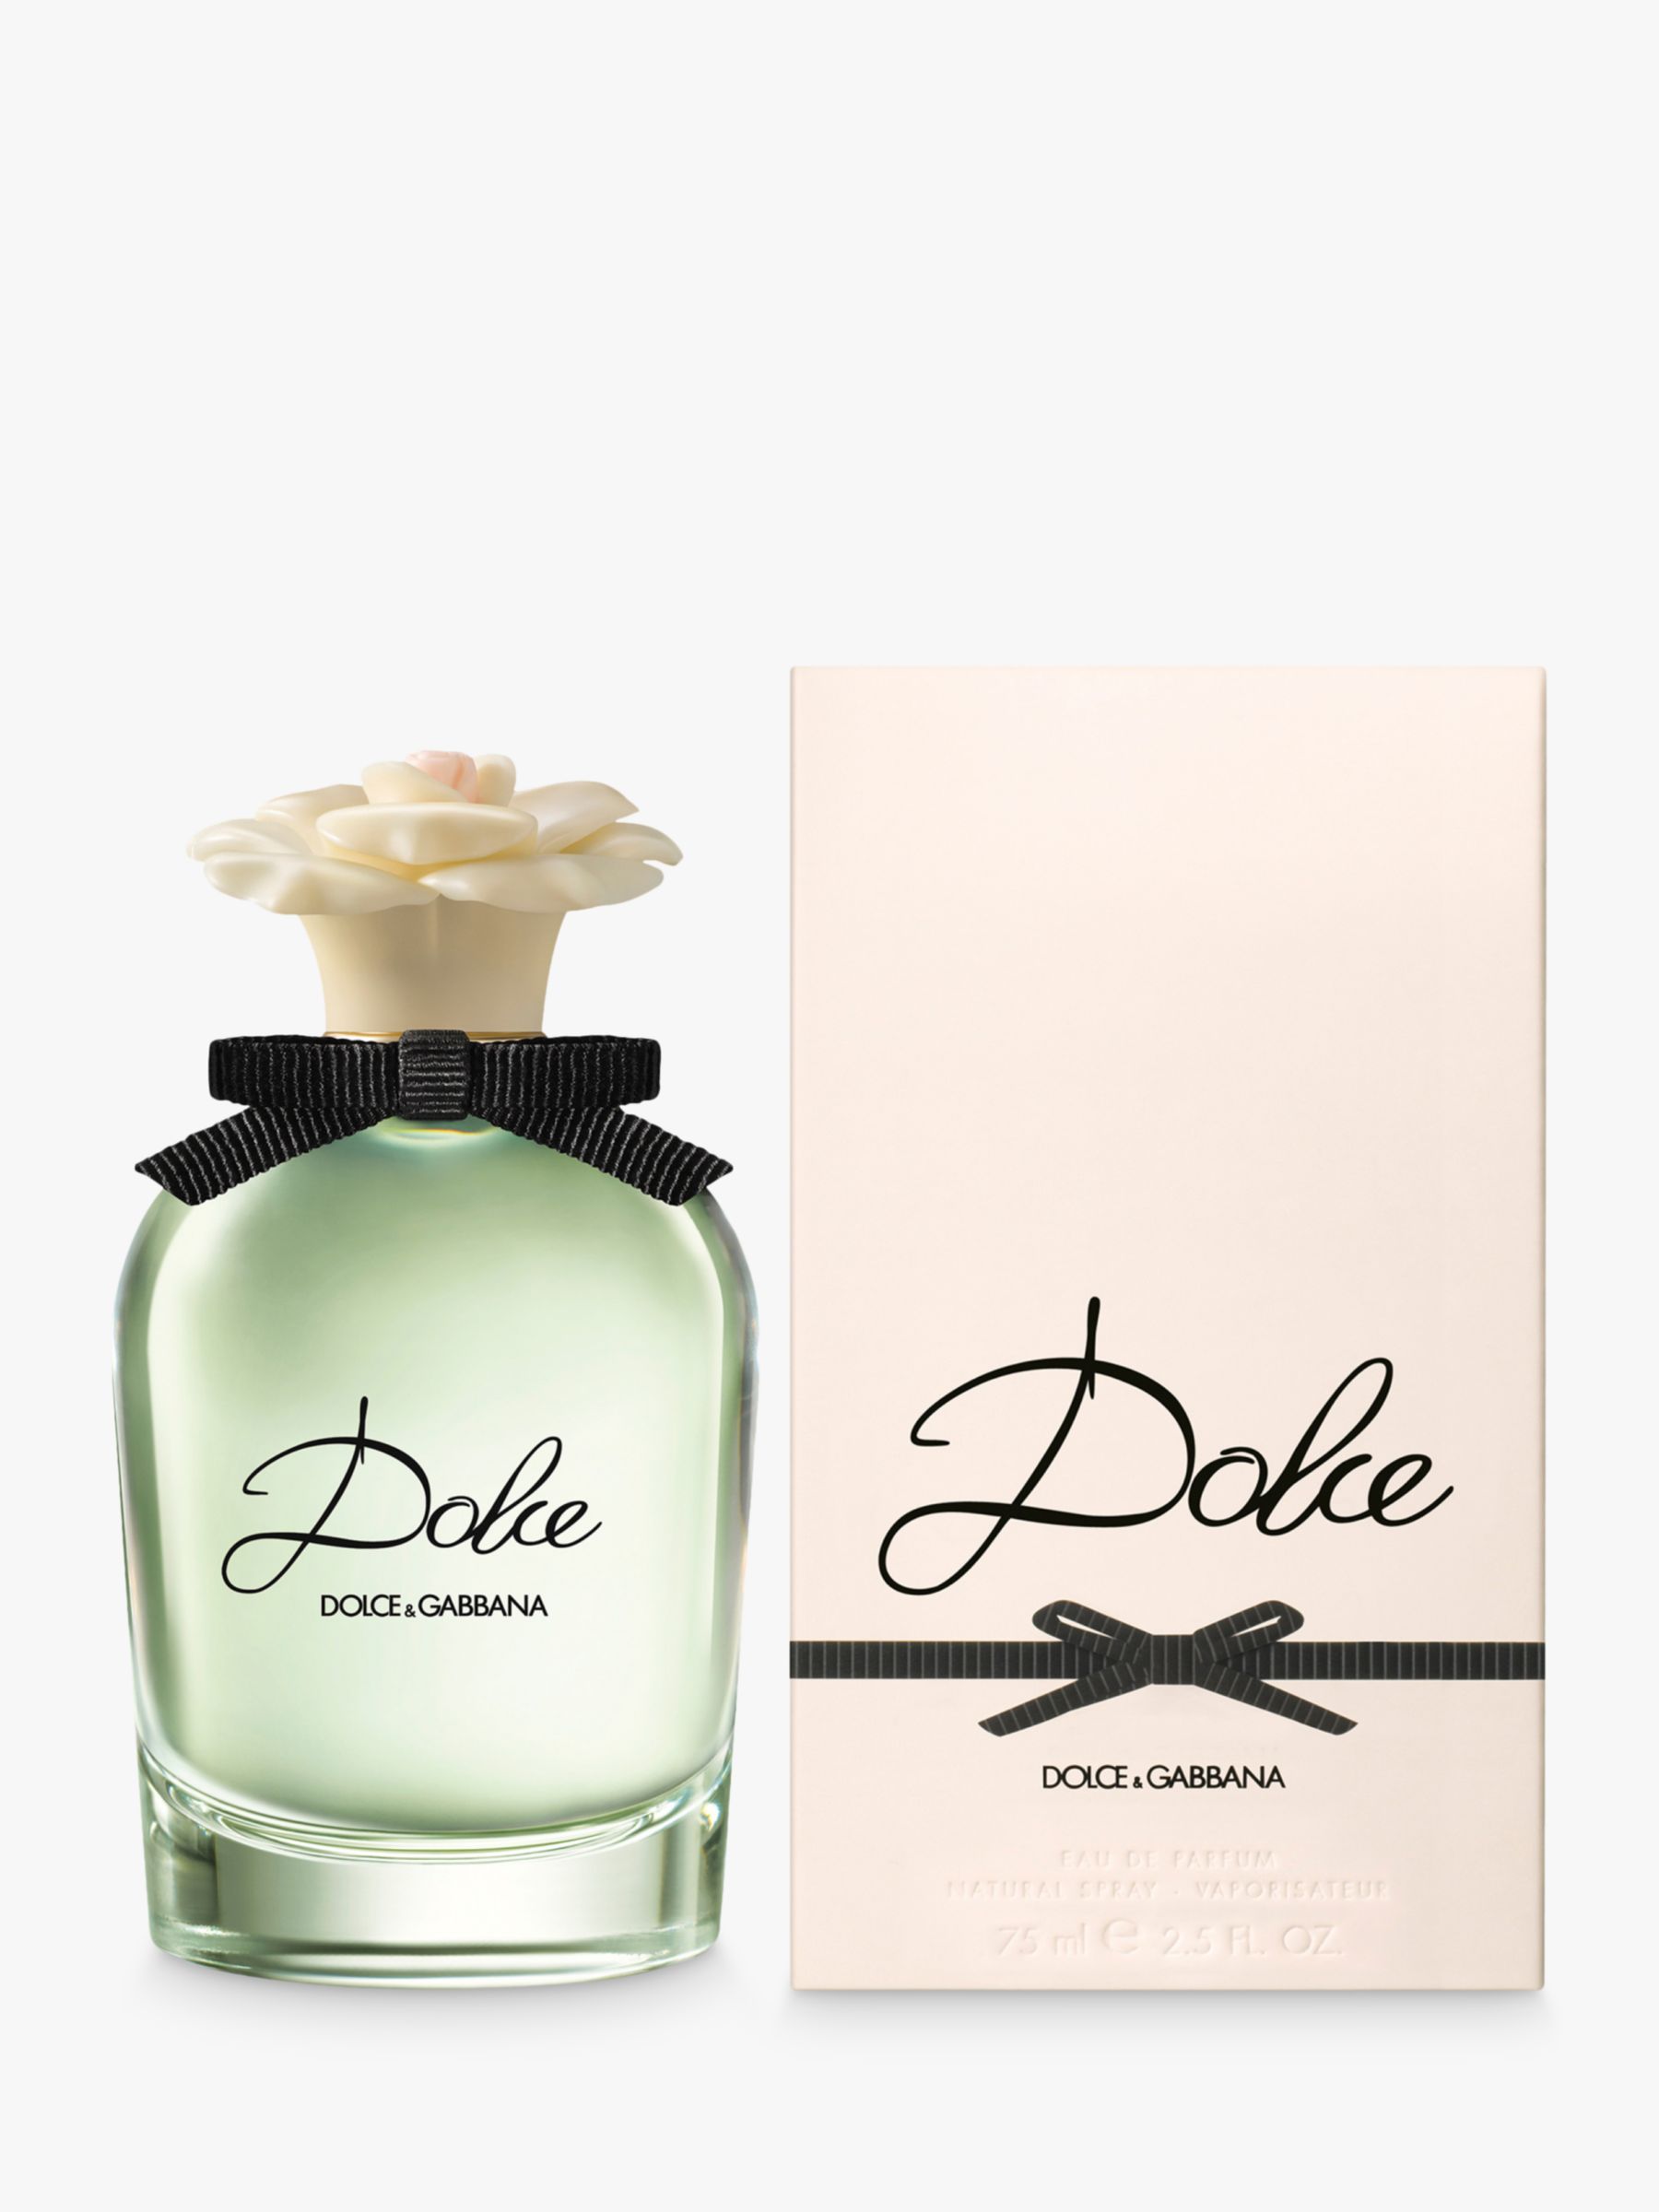 Dolce & Gabbana Dolce Eau de Parfum, 75ml at John Lewis & Partners